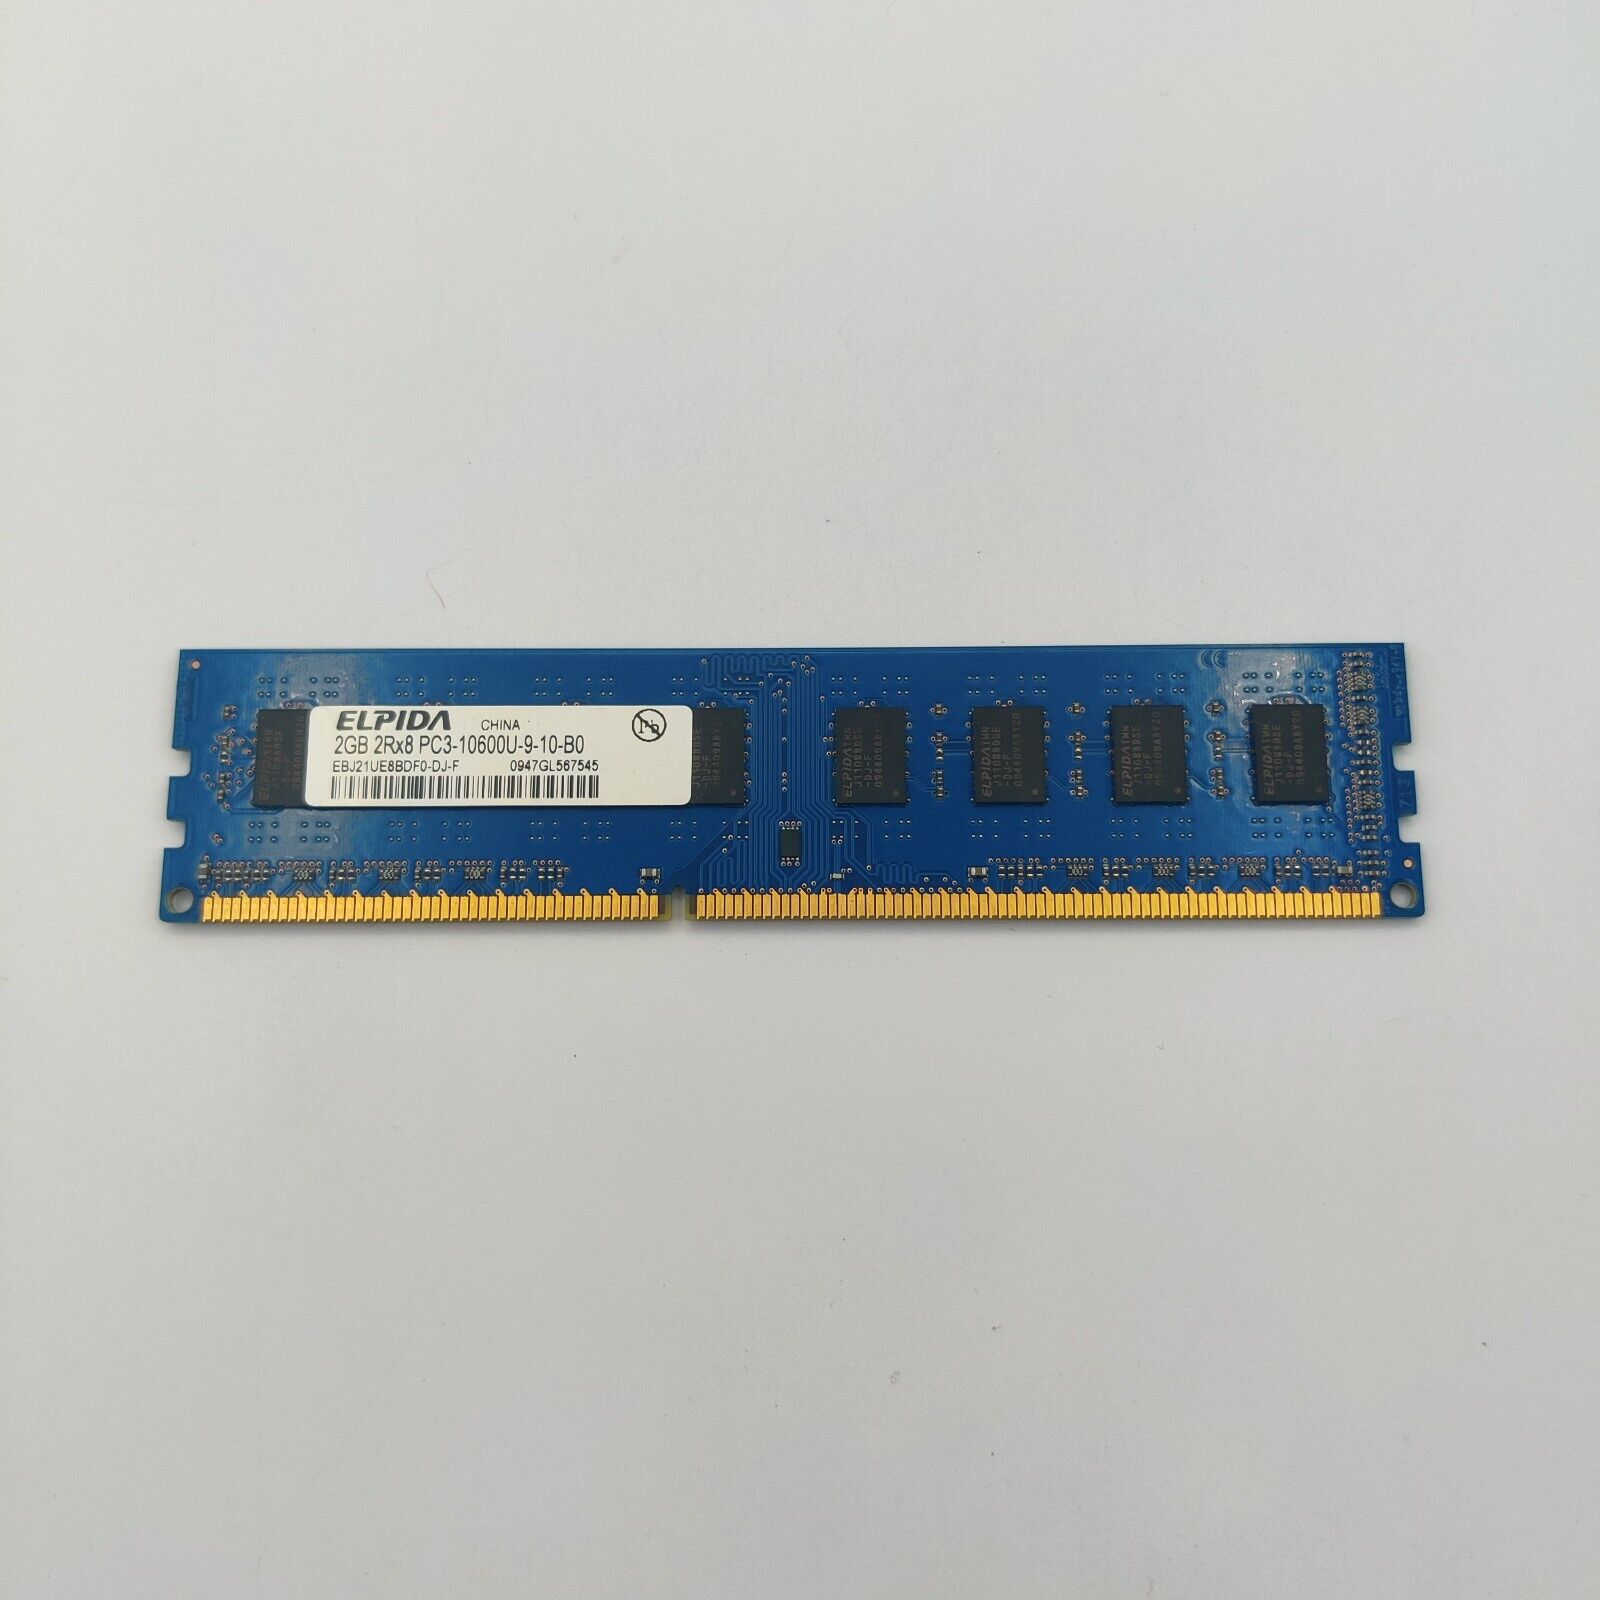 RAM Stick Memory Module ELPIDA 2GB 2RX8 PC3-10600U-9-10-B0